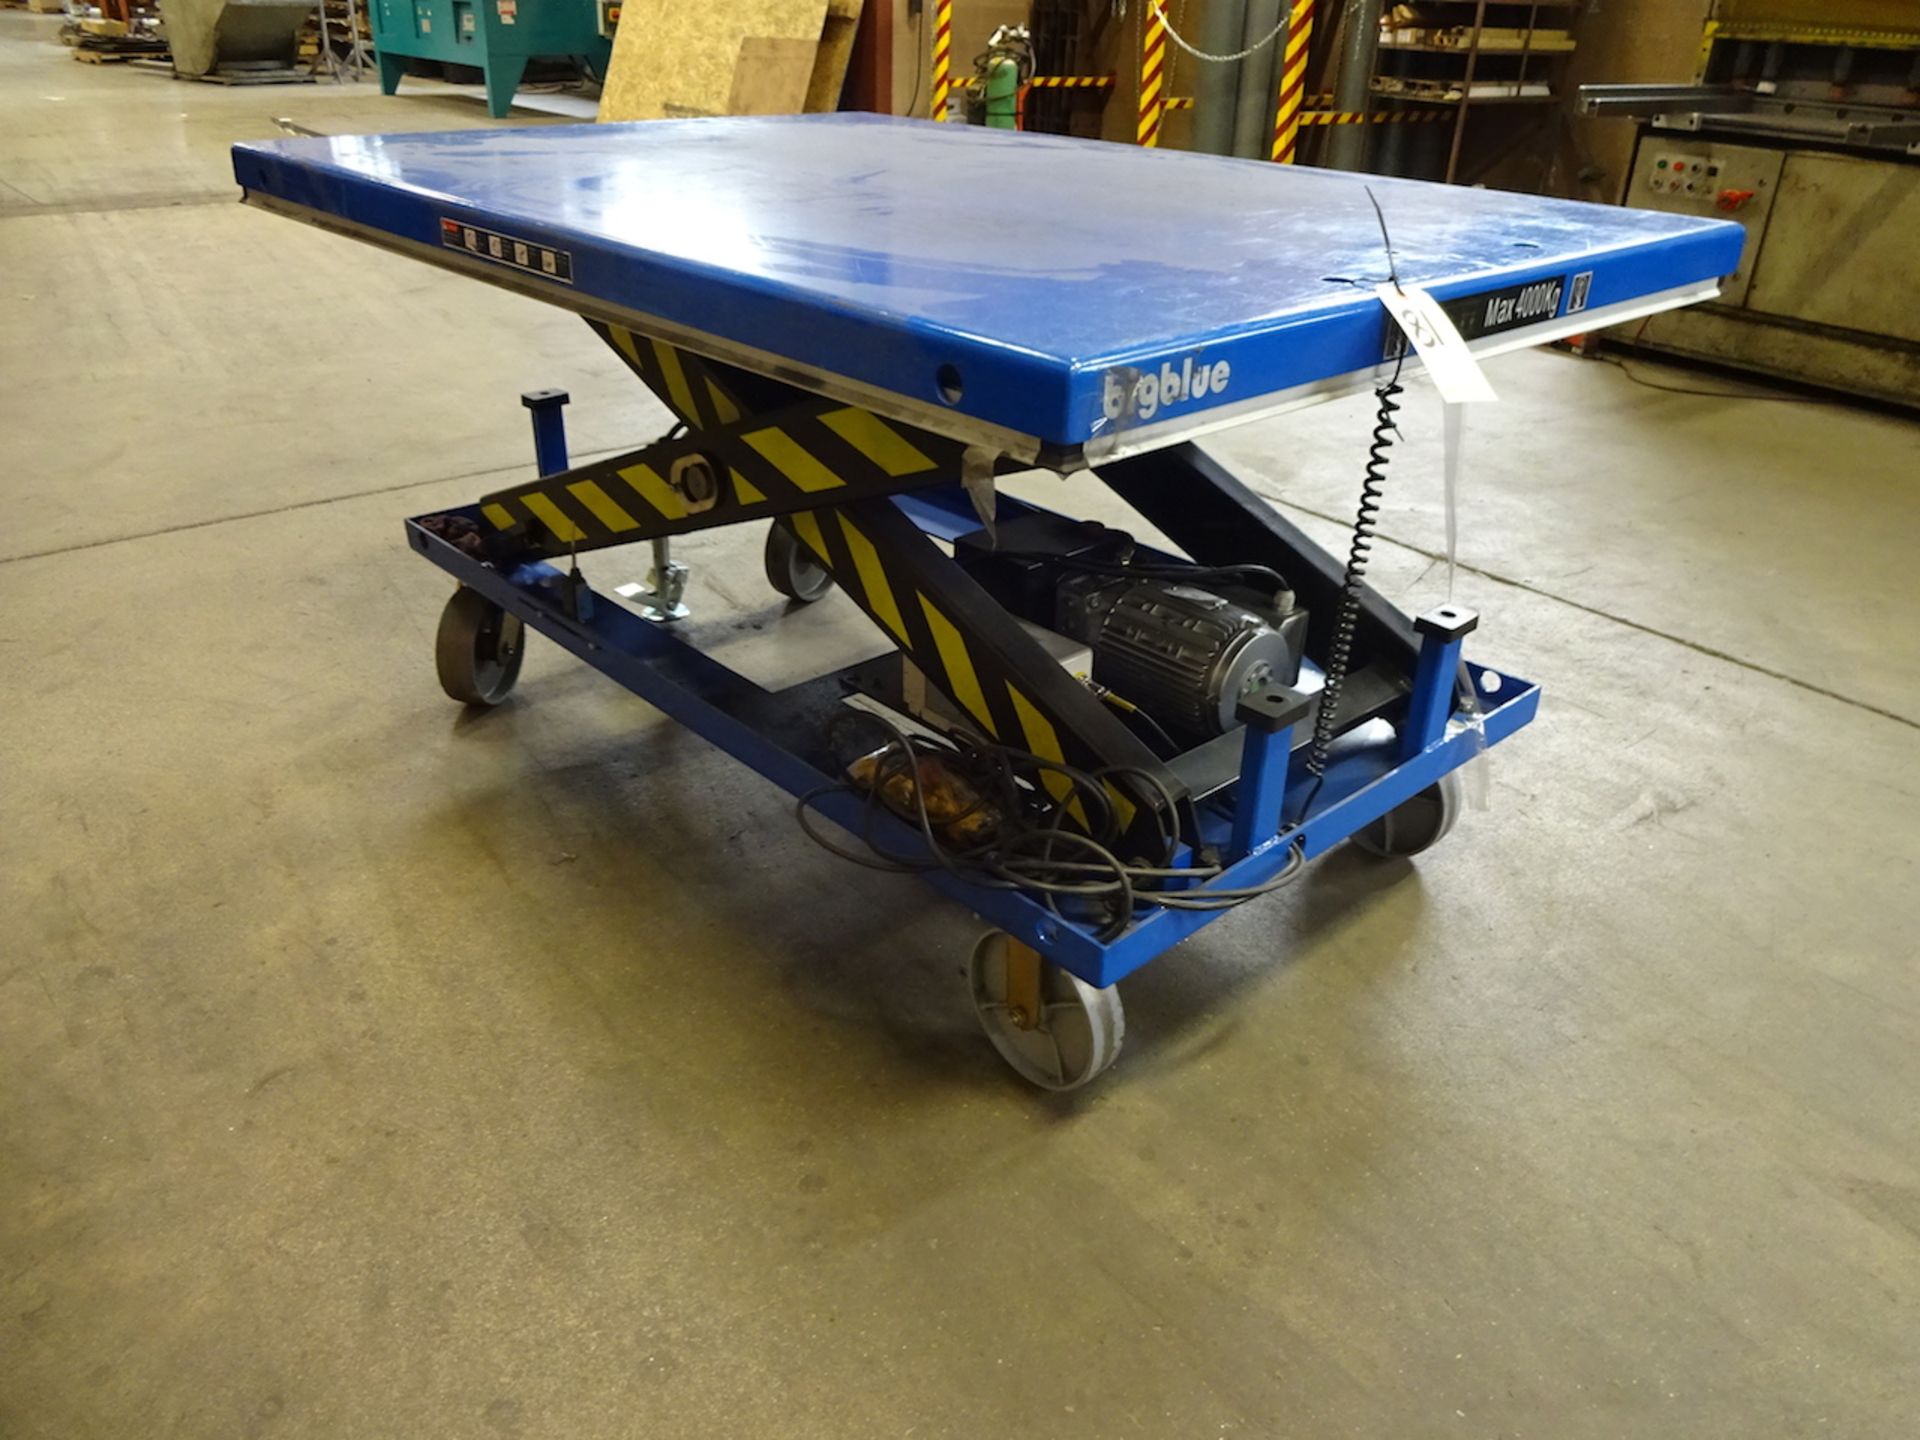 2017 Big Blue 6000 lb./4000 kg Model HW4001 Portable Electric Scissor Lift Table, S/N 4601026211